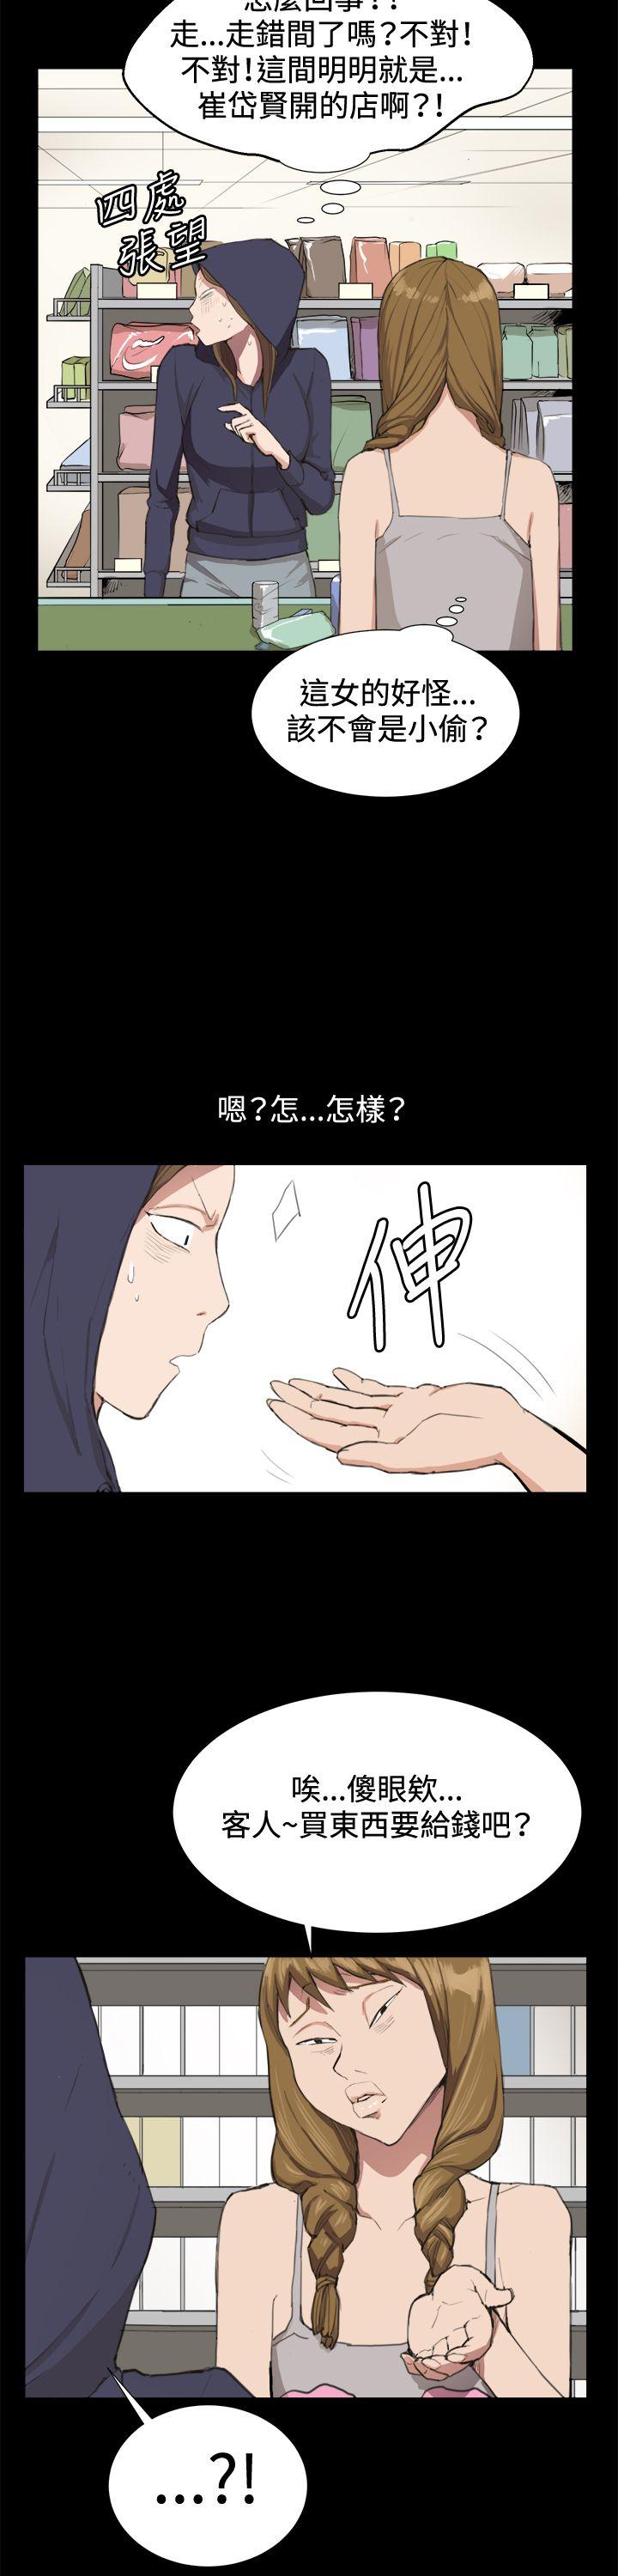 韩国污漫画 深夜便利店 第9话 4